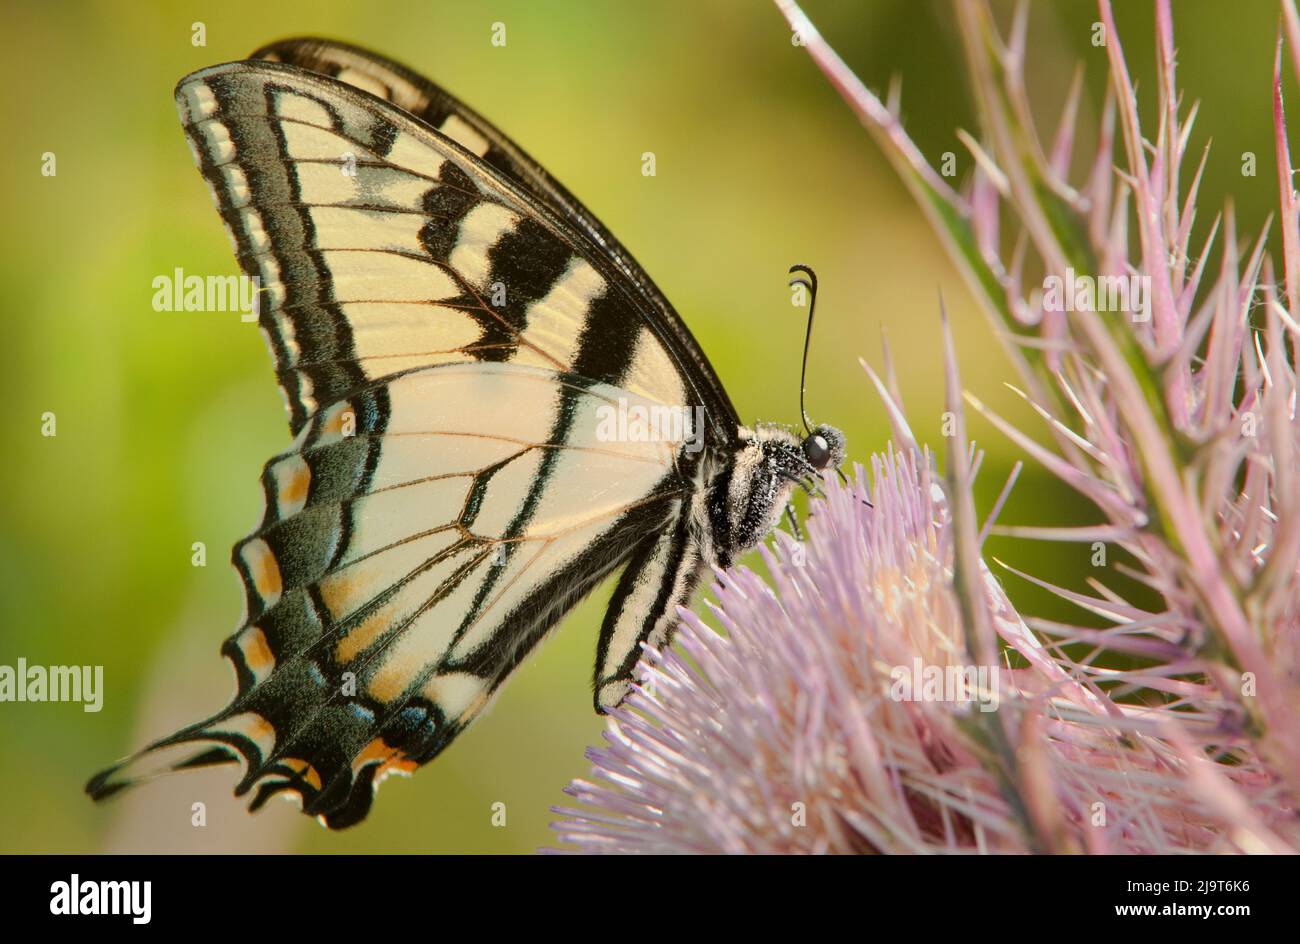 USA, Texas, Caddo Lake National Wildlife Refuge. La farfalla di coda di rondine della tigre orientale si nutre di una pianta di cardo gigante. Foto Stock